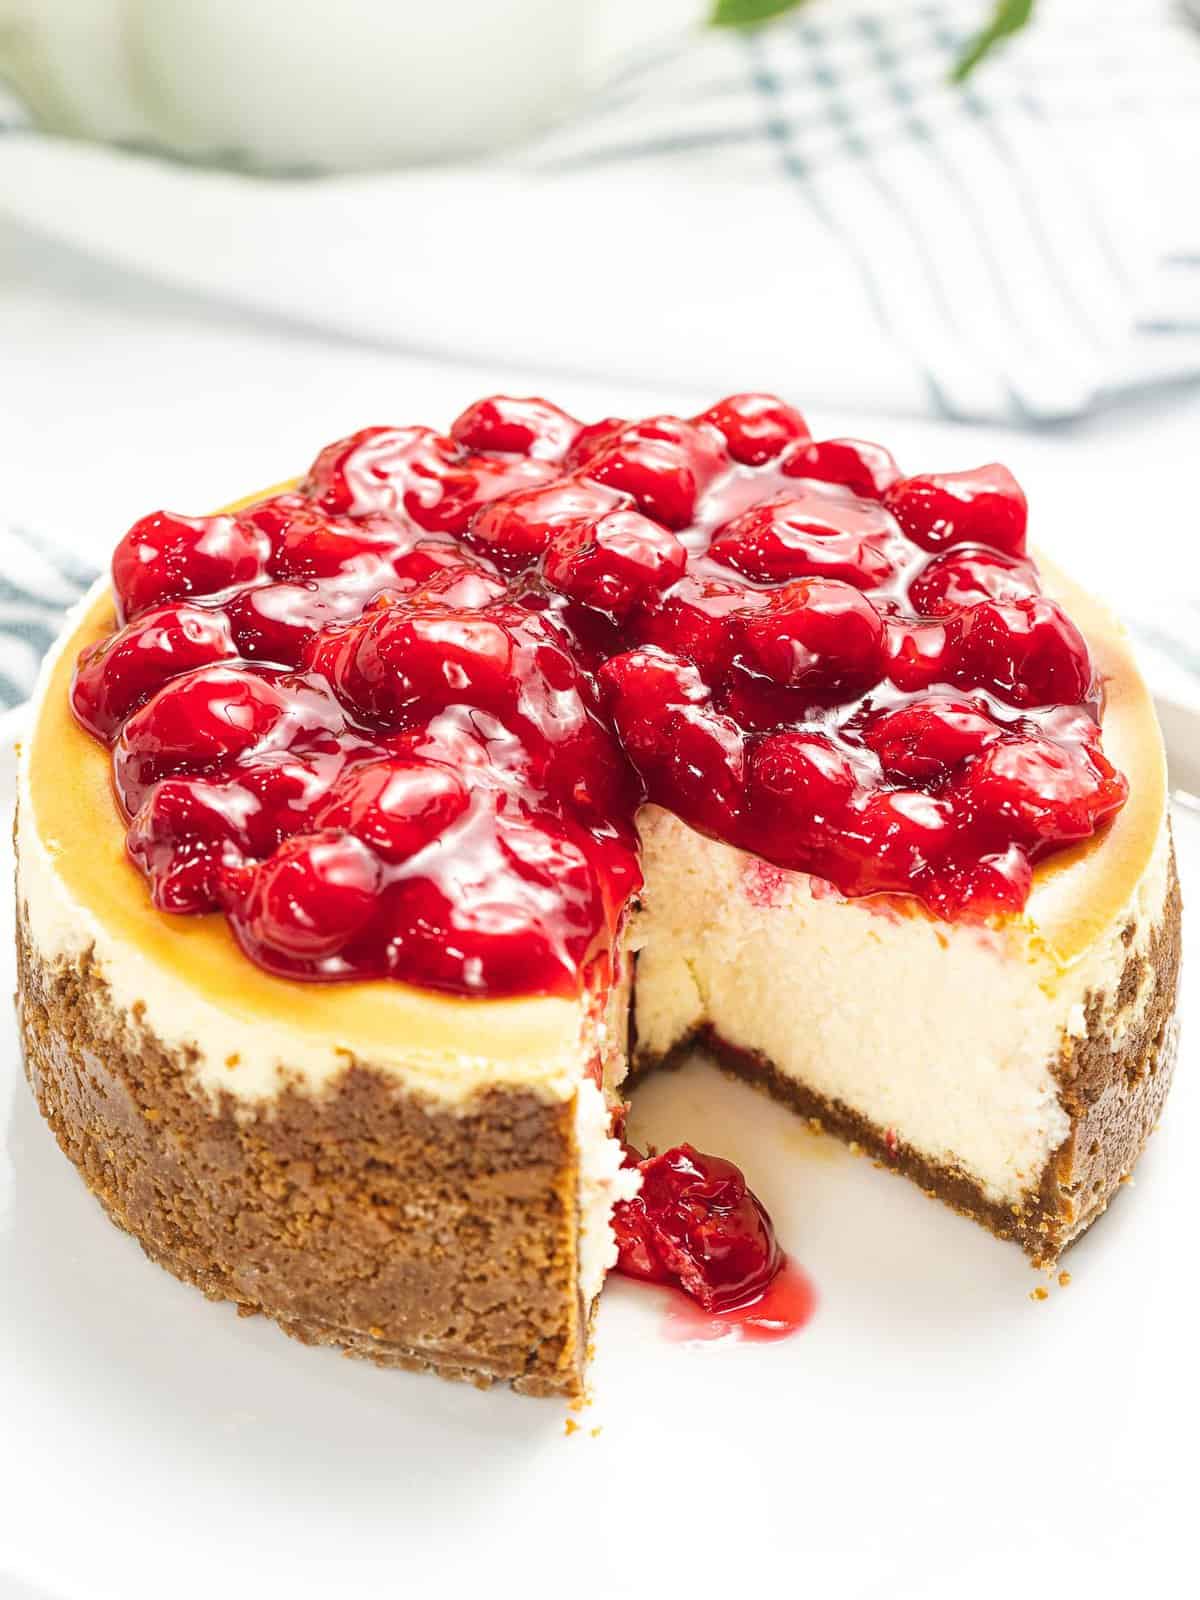 Cherry cheesecake with graham cracker crust.